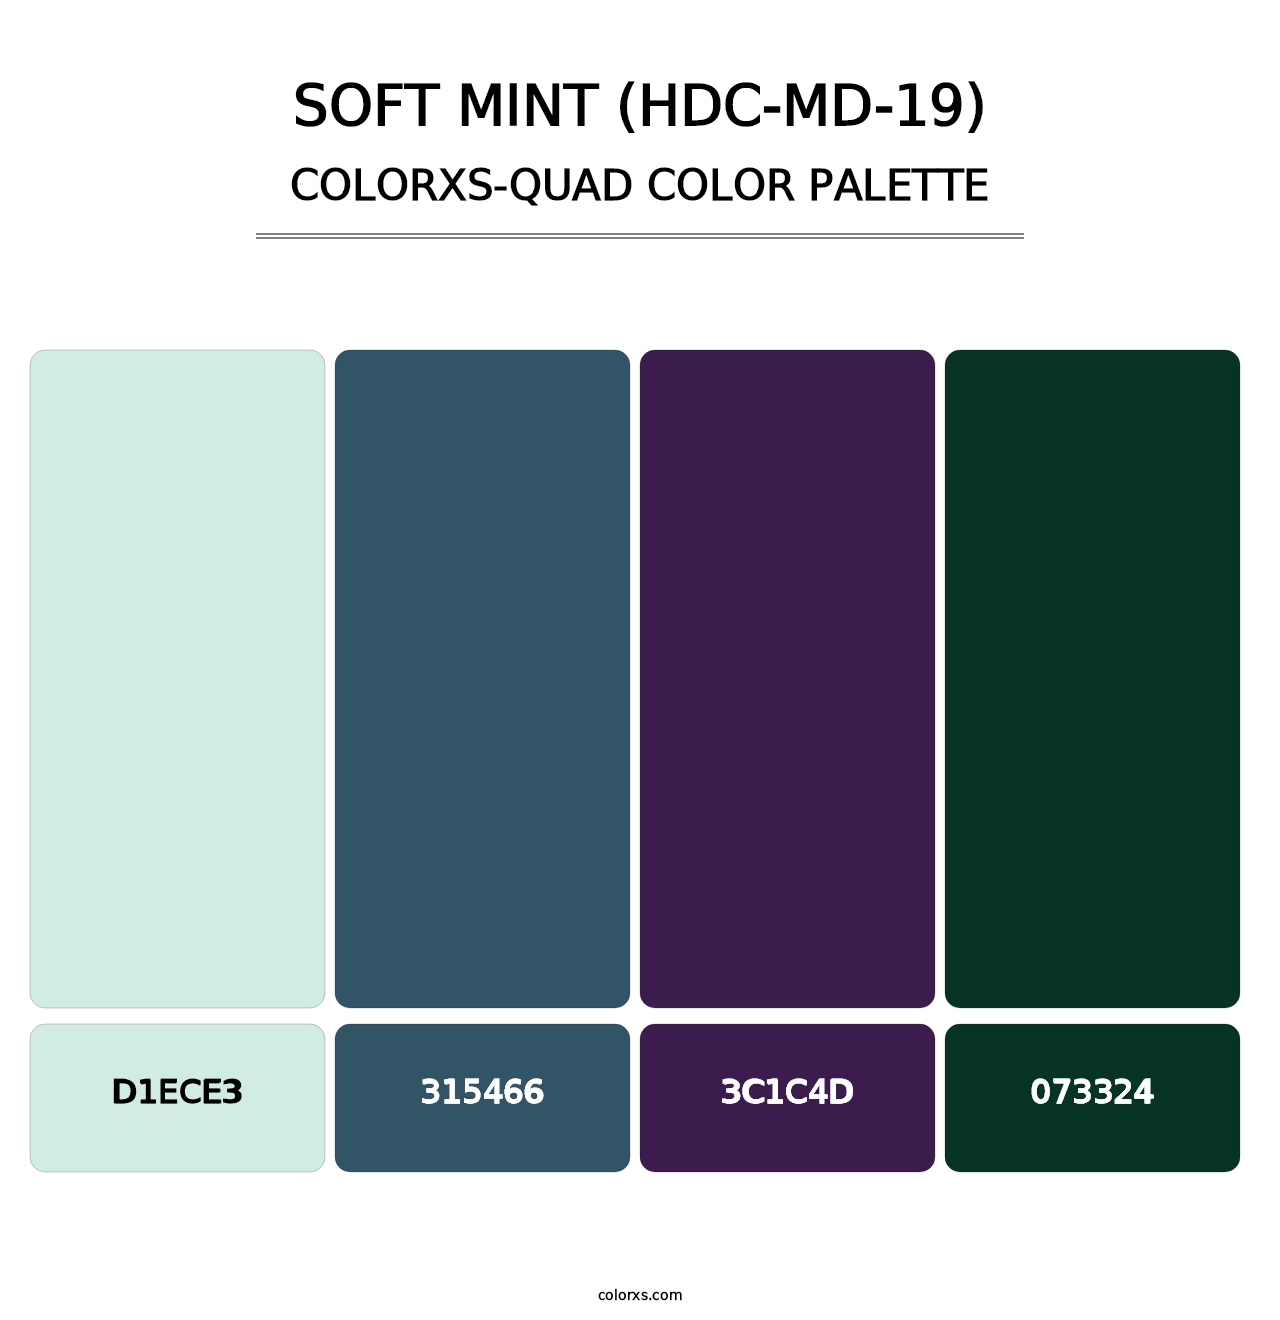 Soft Mint (HDC-MD-19) - Colorxs Quad Palette